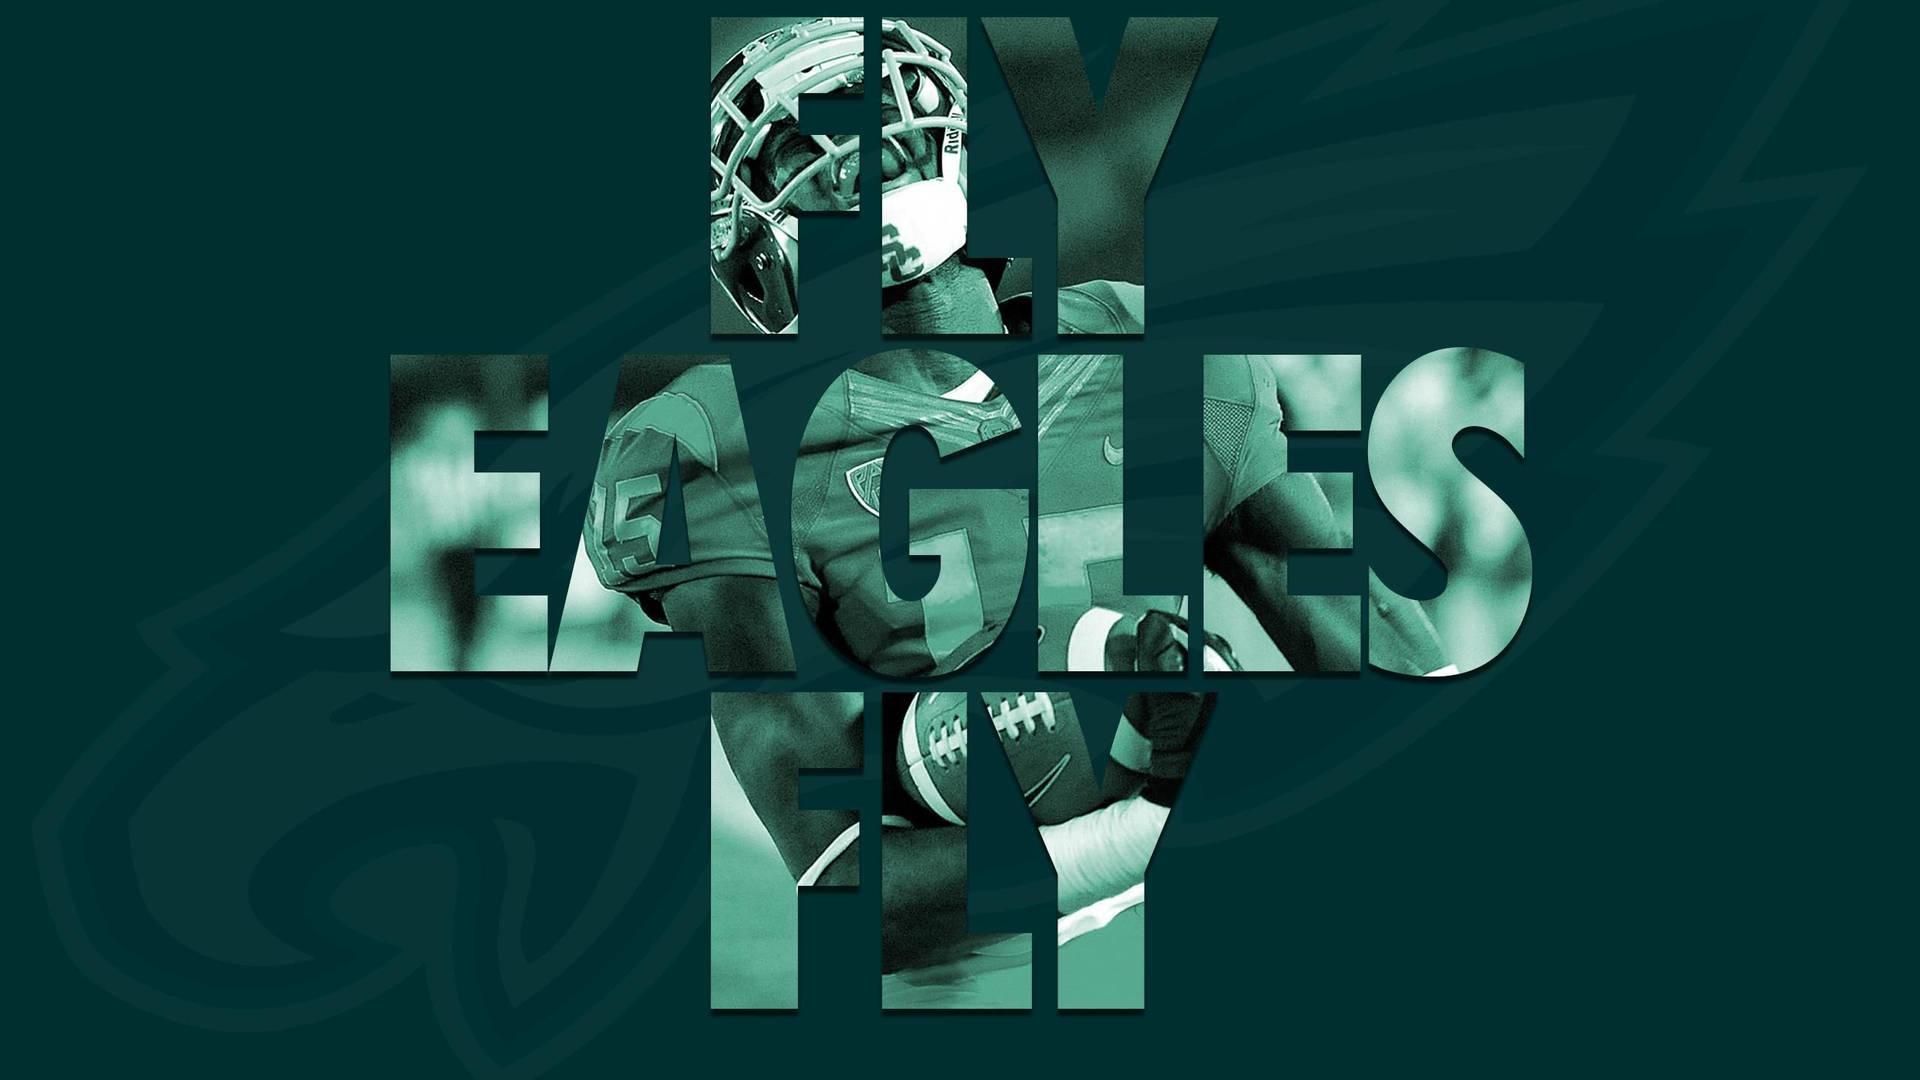 Green Philadelphia Eagles Poster Wallpaper